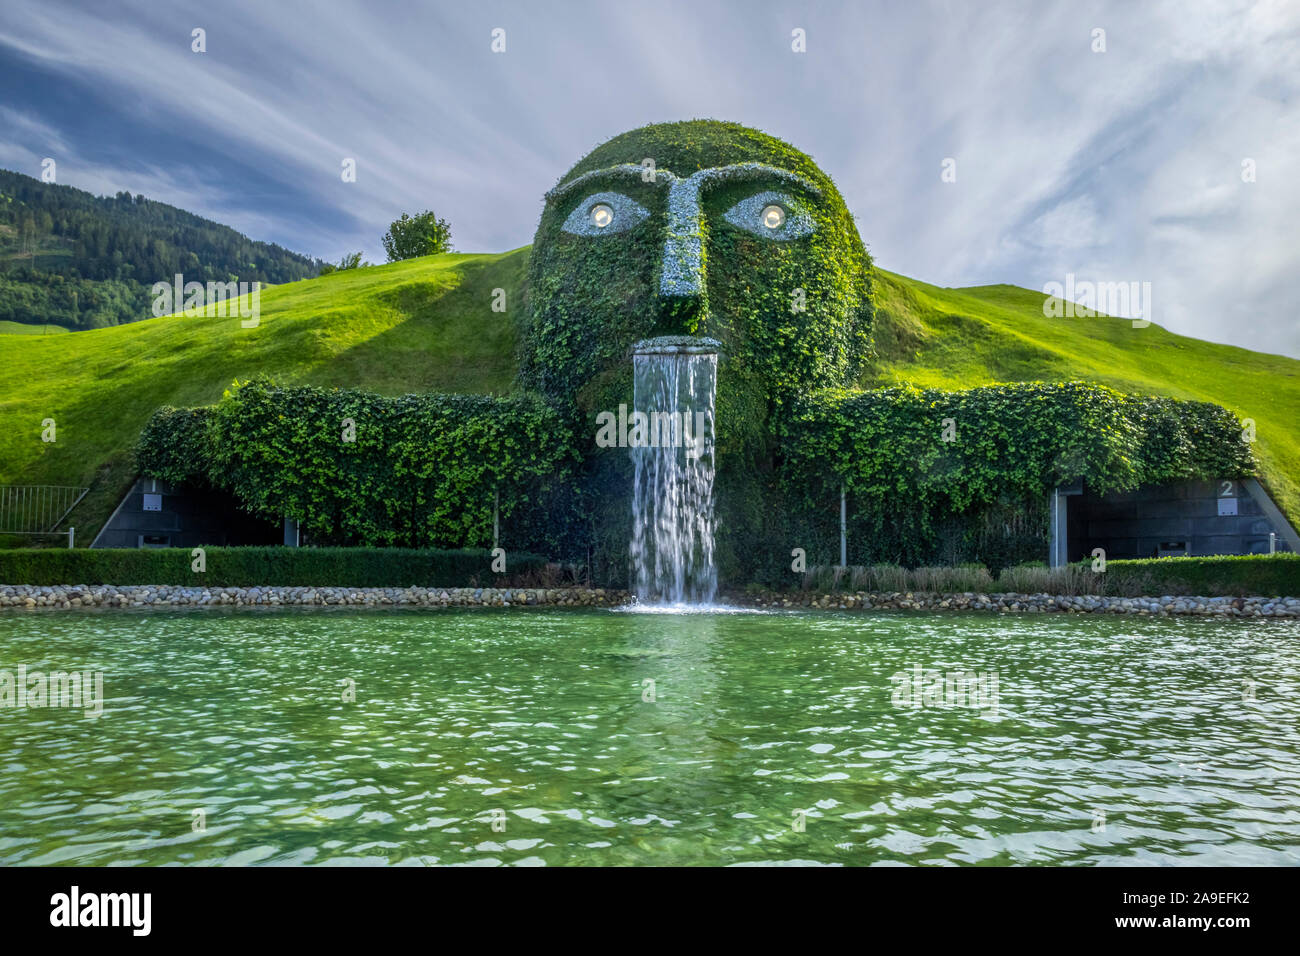 Swarovski Crystal Worlds, 'The Giant', Wattens, Tyrol, Austria, Europe  Stock Photo - Alamy